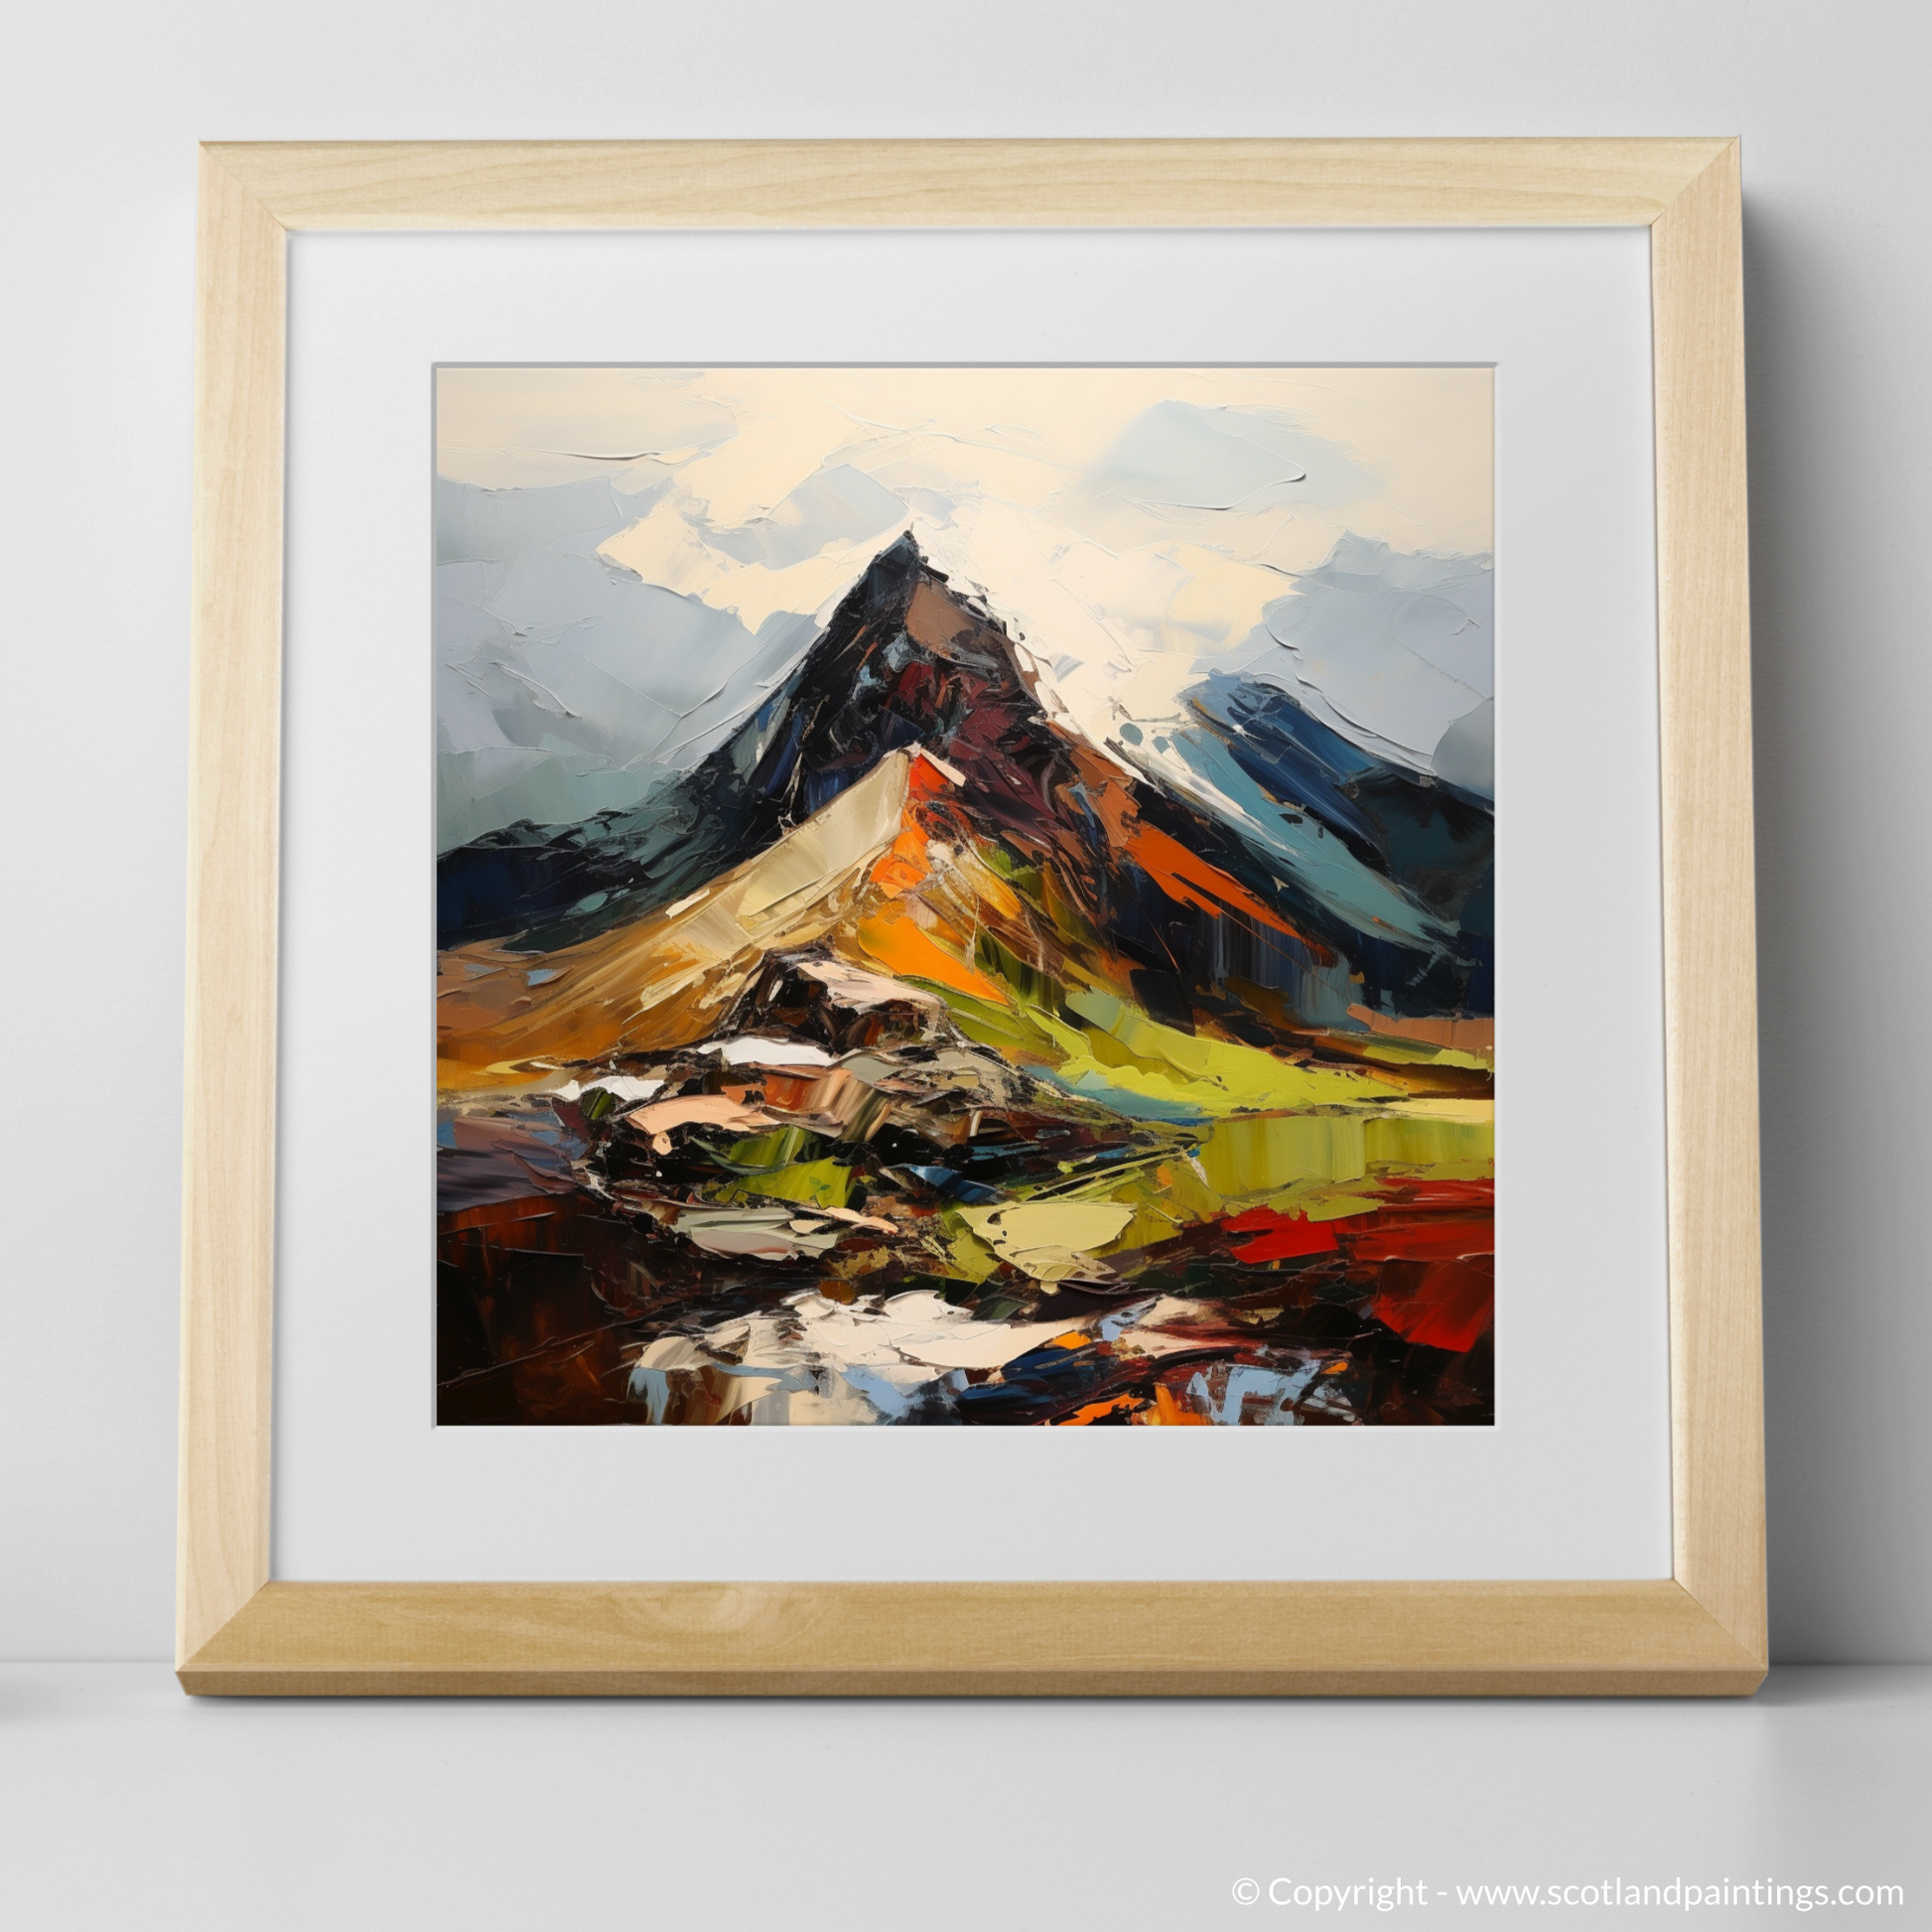 Art Print of Cairn Gorm, Highlands with a natural frame